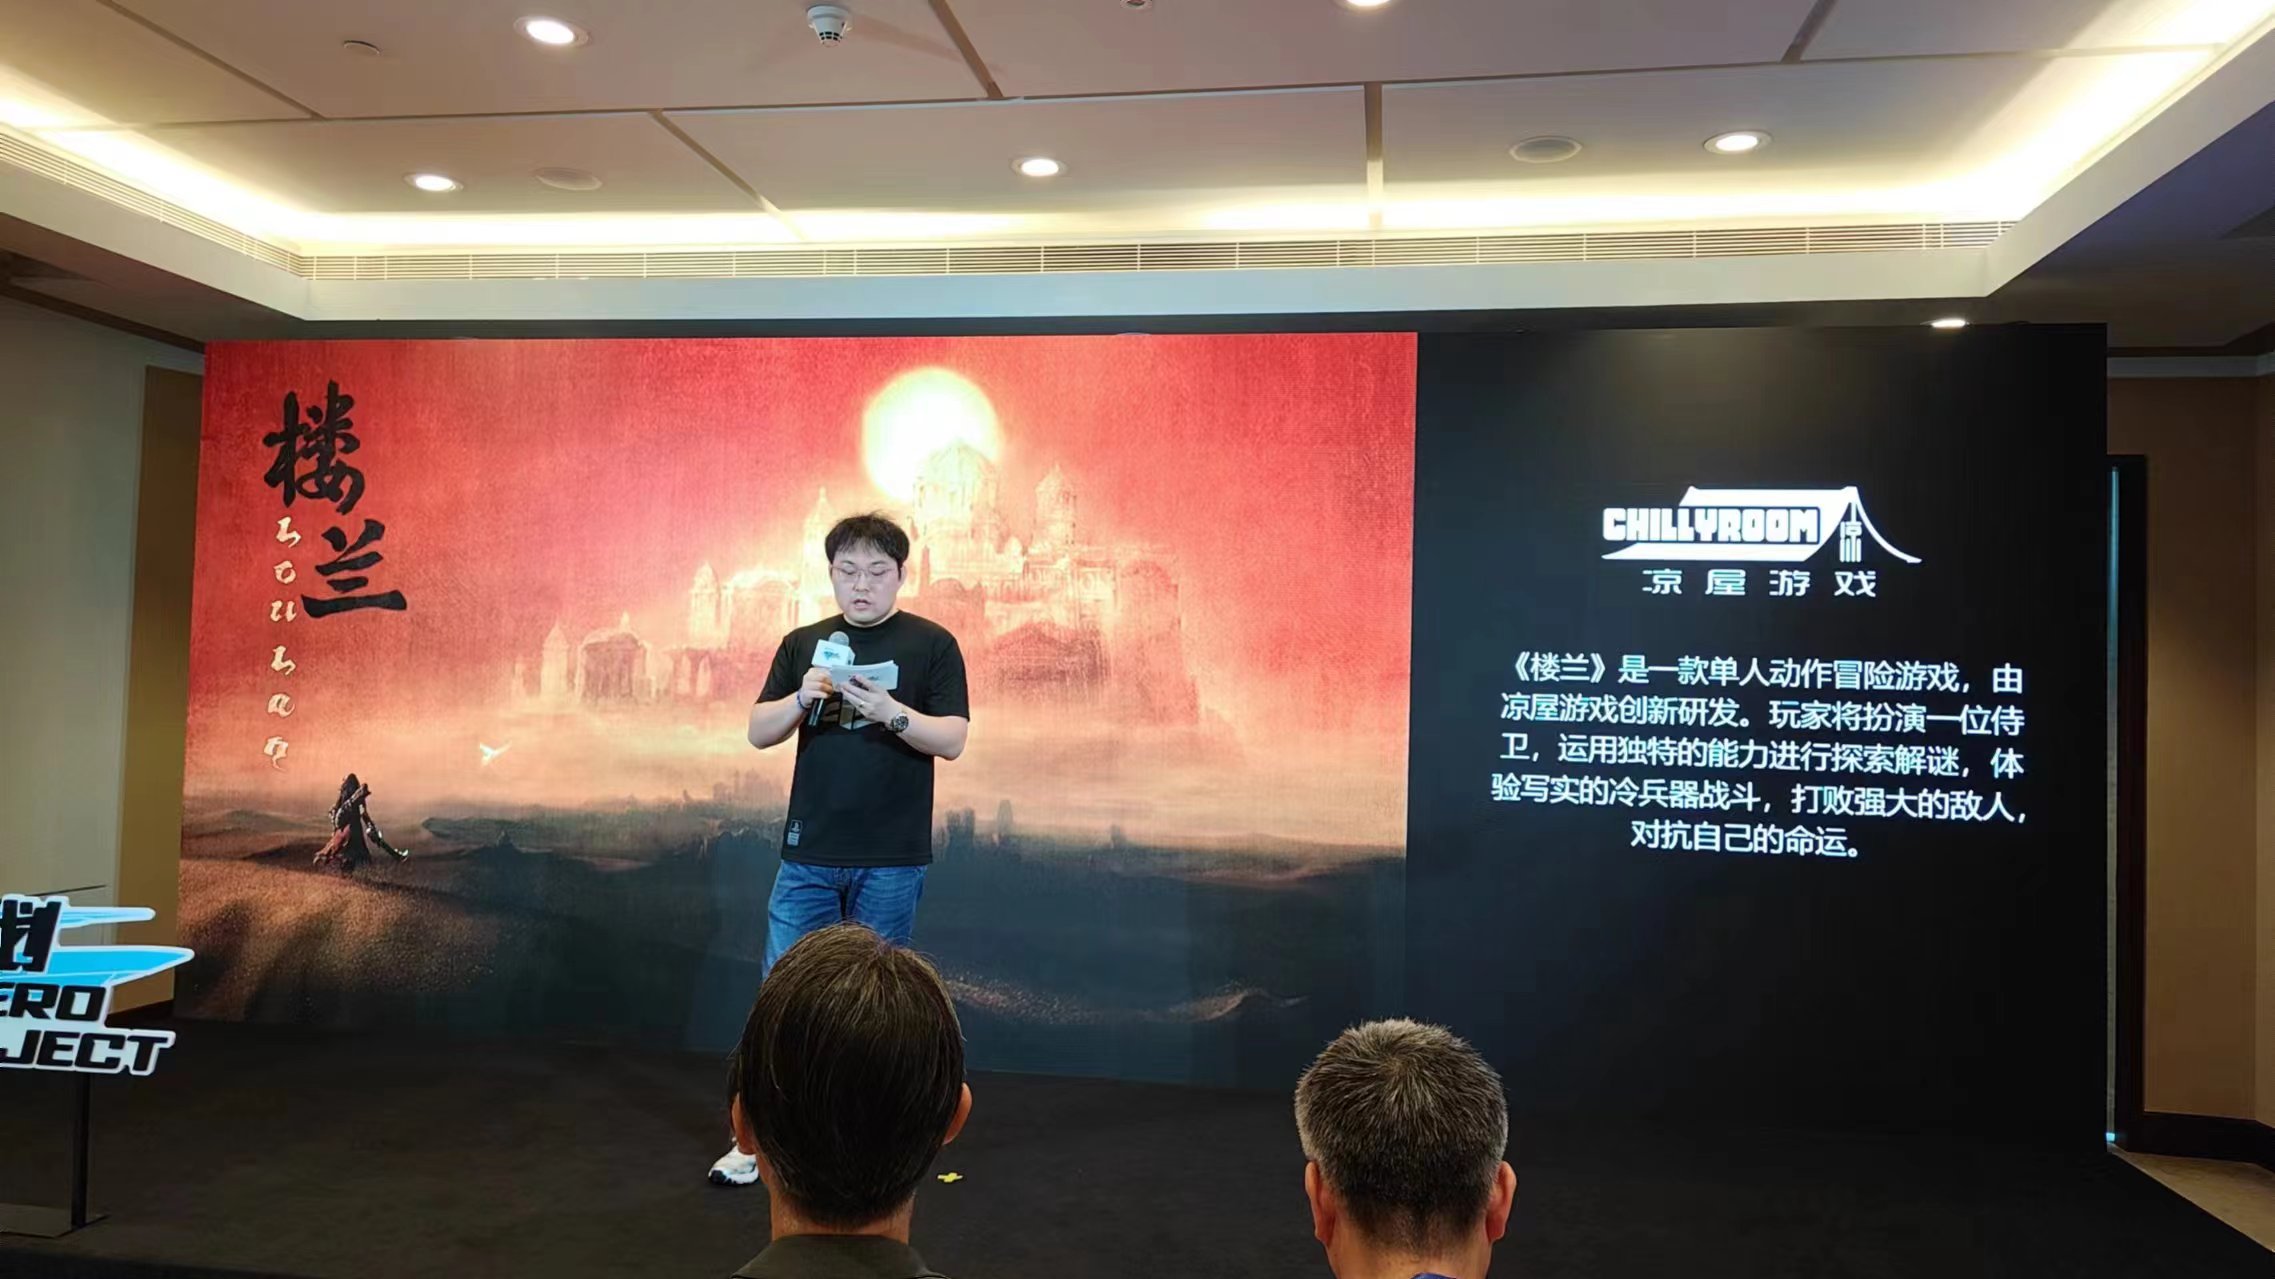 中国之星计划第三期发布会现场公布三款作品